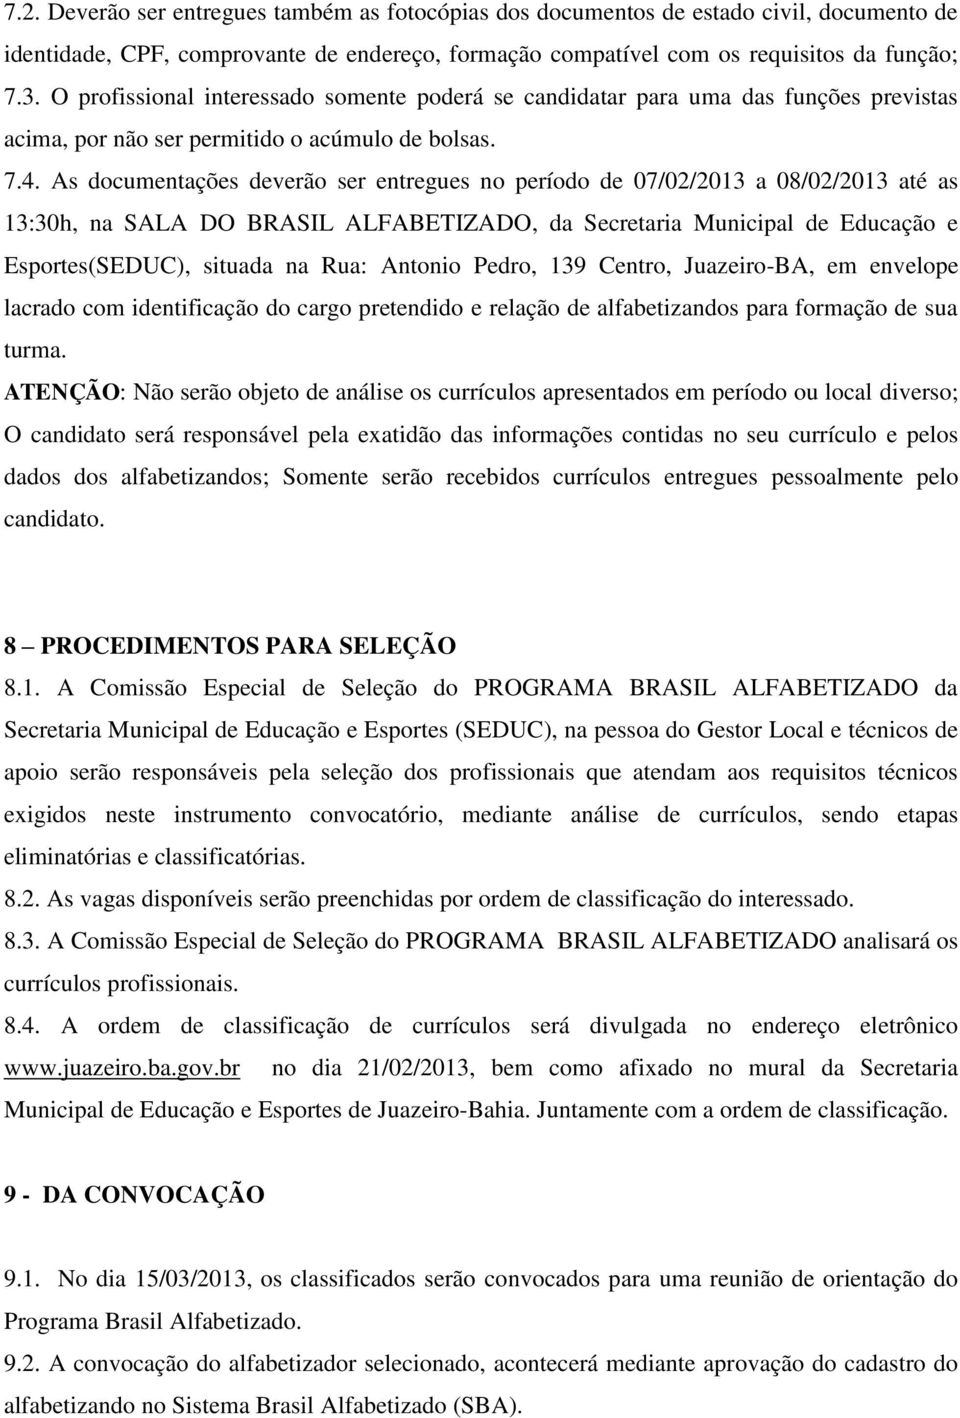 As documentações deverão ser entregues no período de 07/02/2013 a 08/02/2013 até as 13:30h, na SALA DO BRASIL ALFABETIZADO, da Secretaria Municipal de Educação e Esportes(SEDUC), situada na Rua: